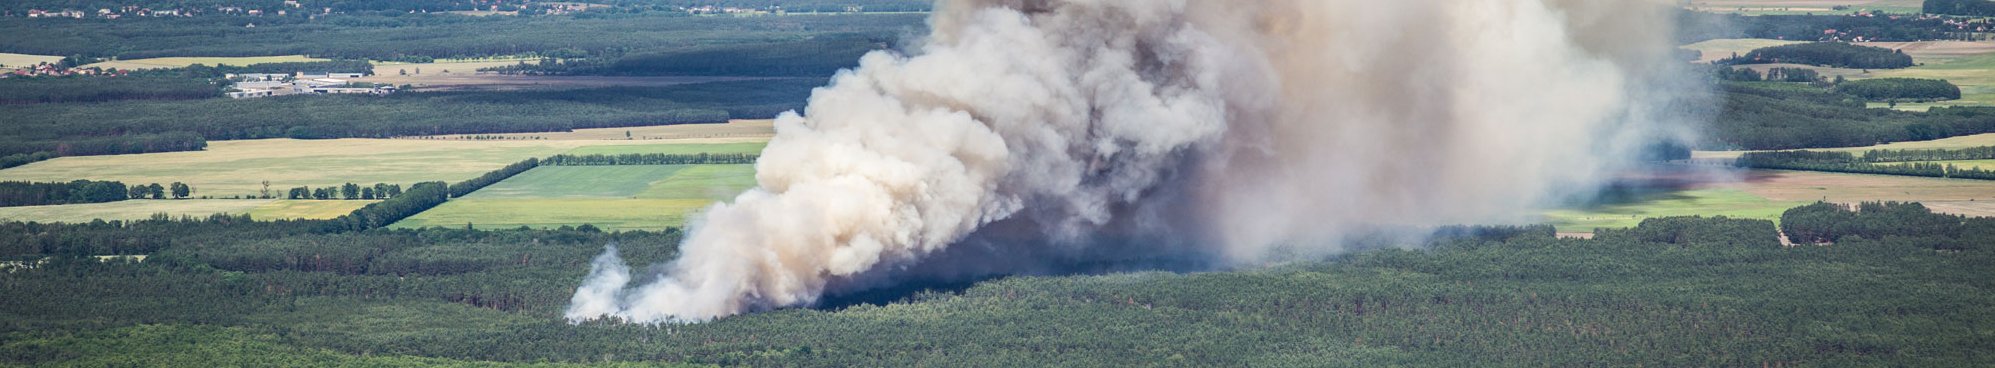 Waldbrand verstehen, vorbeugen und bekämpfen